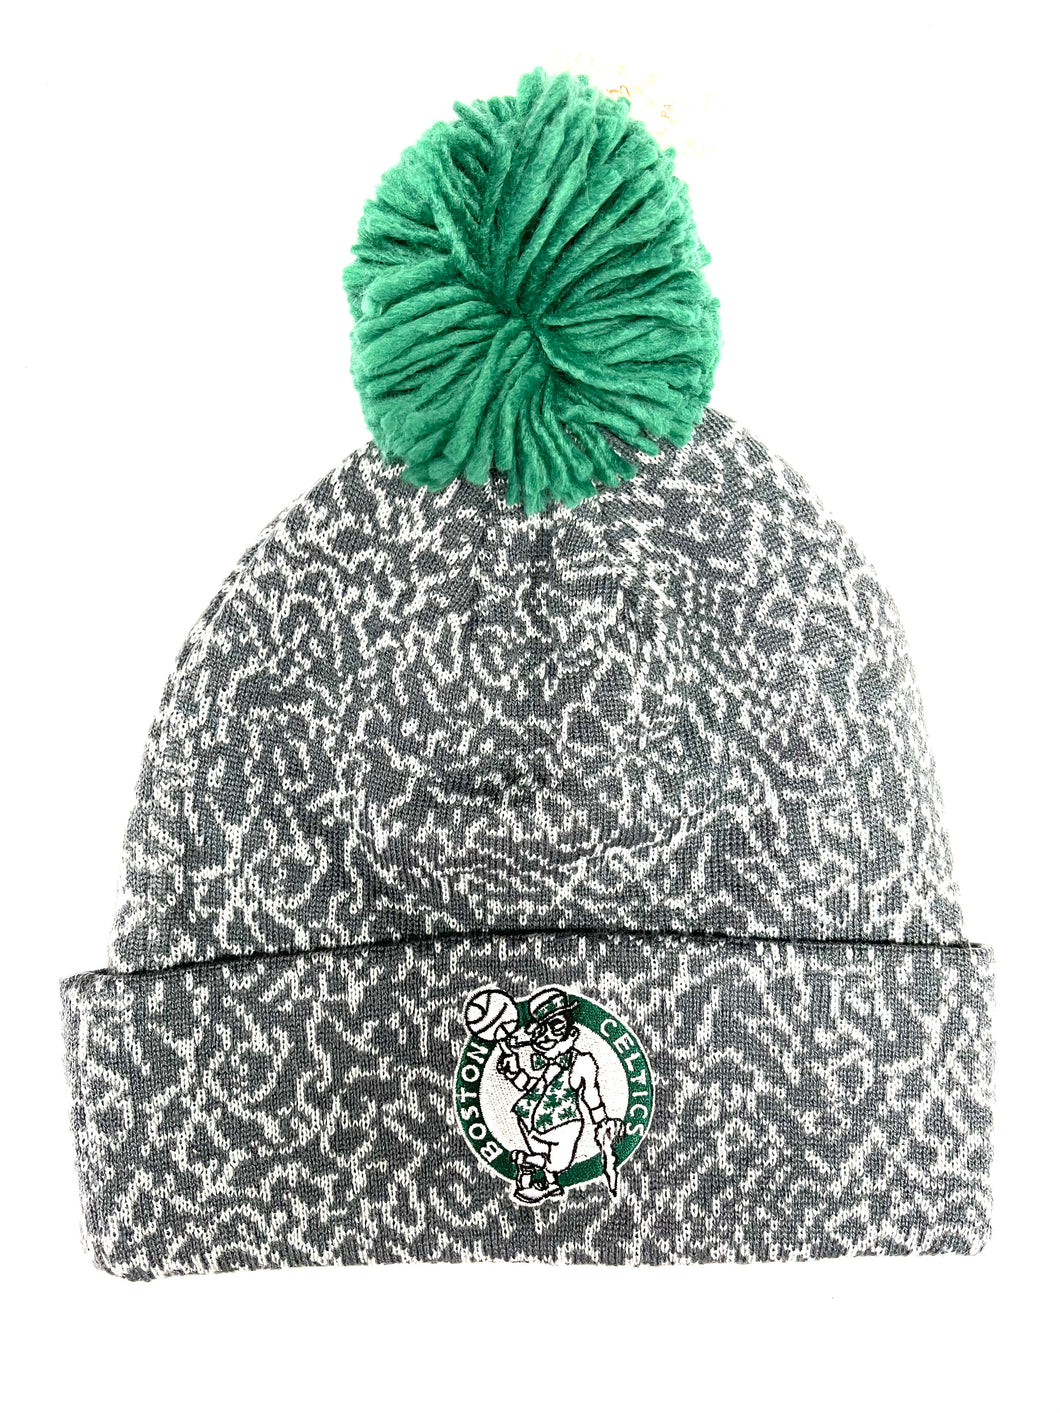 Mitchell & Ness NBA Boston Celtics Cracked Pattern Cuffed Knit Hat